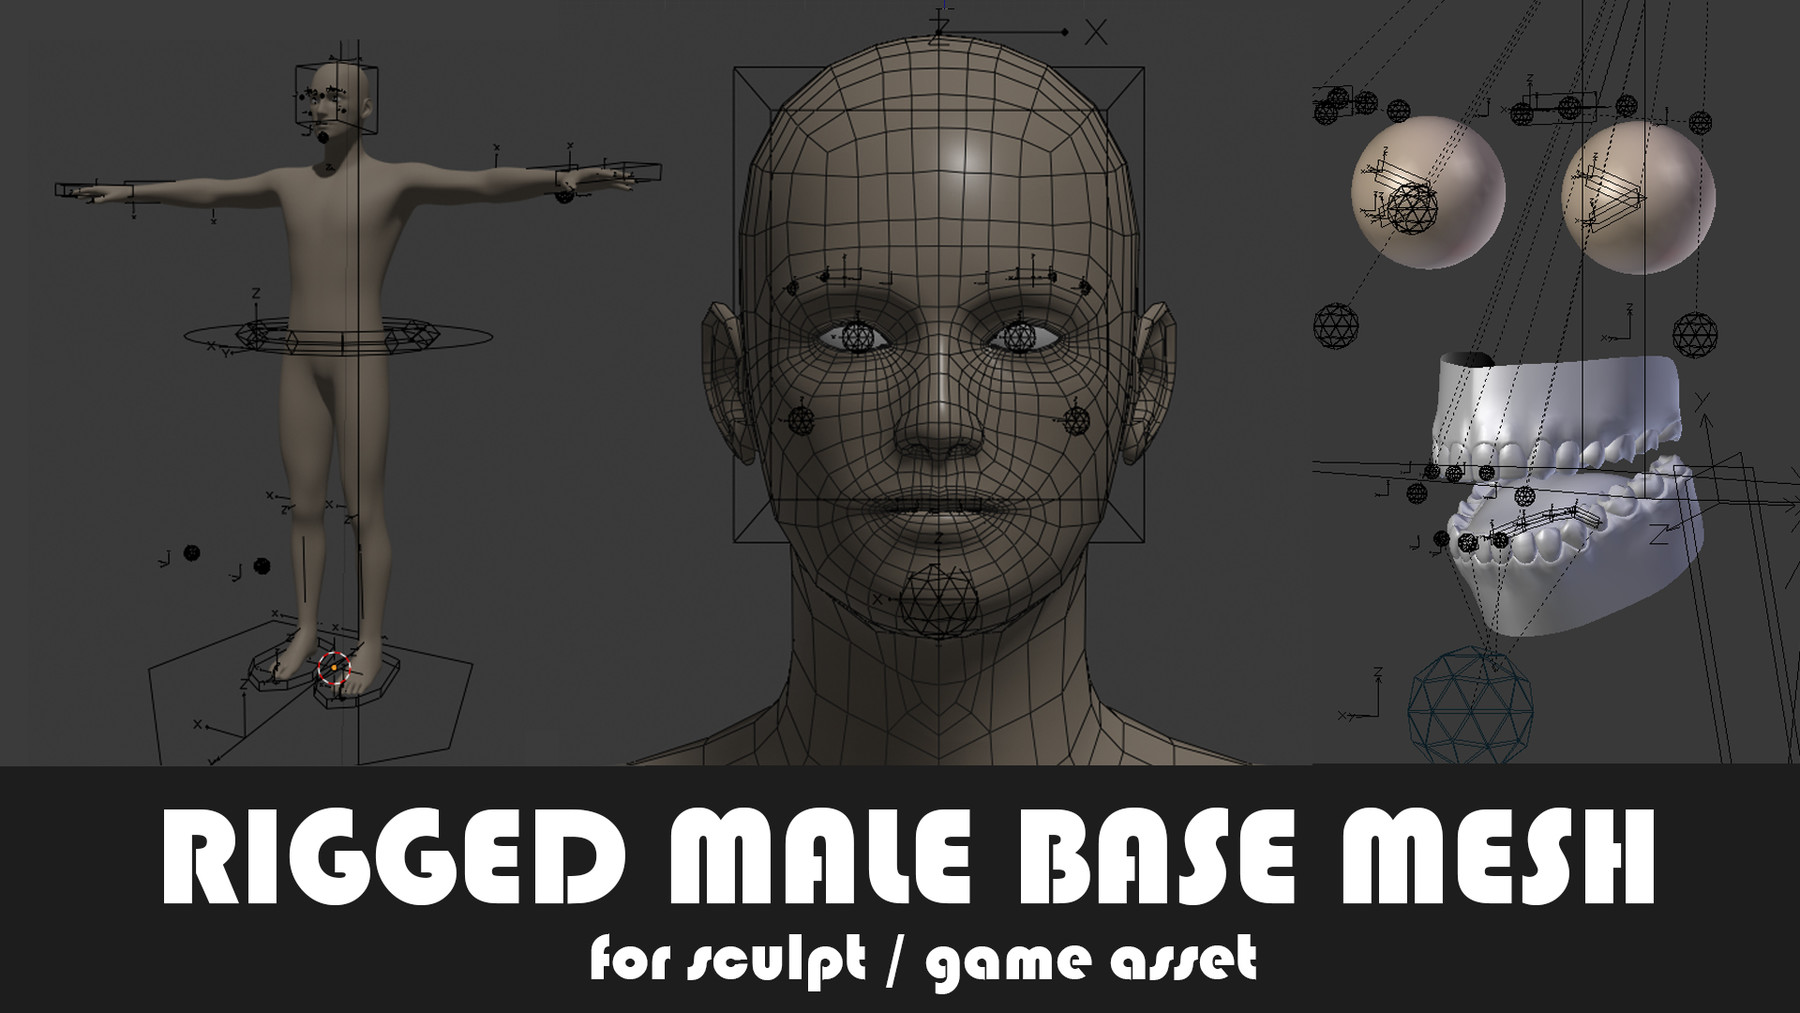 ArtStation - Male base mesh - for sculpting